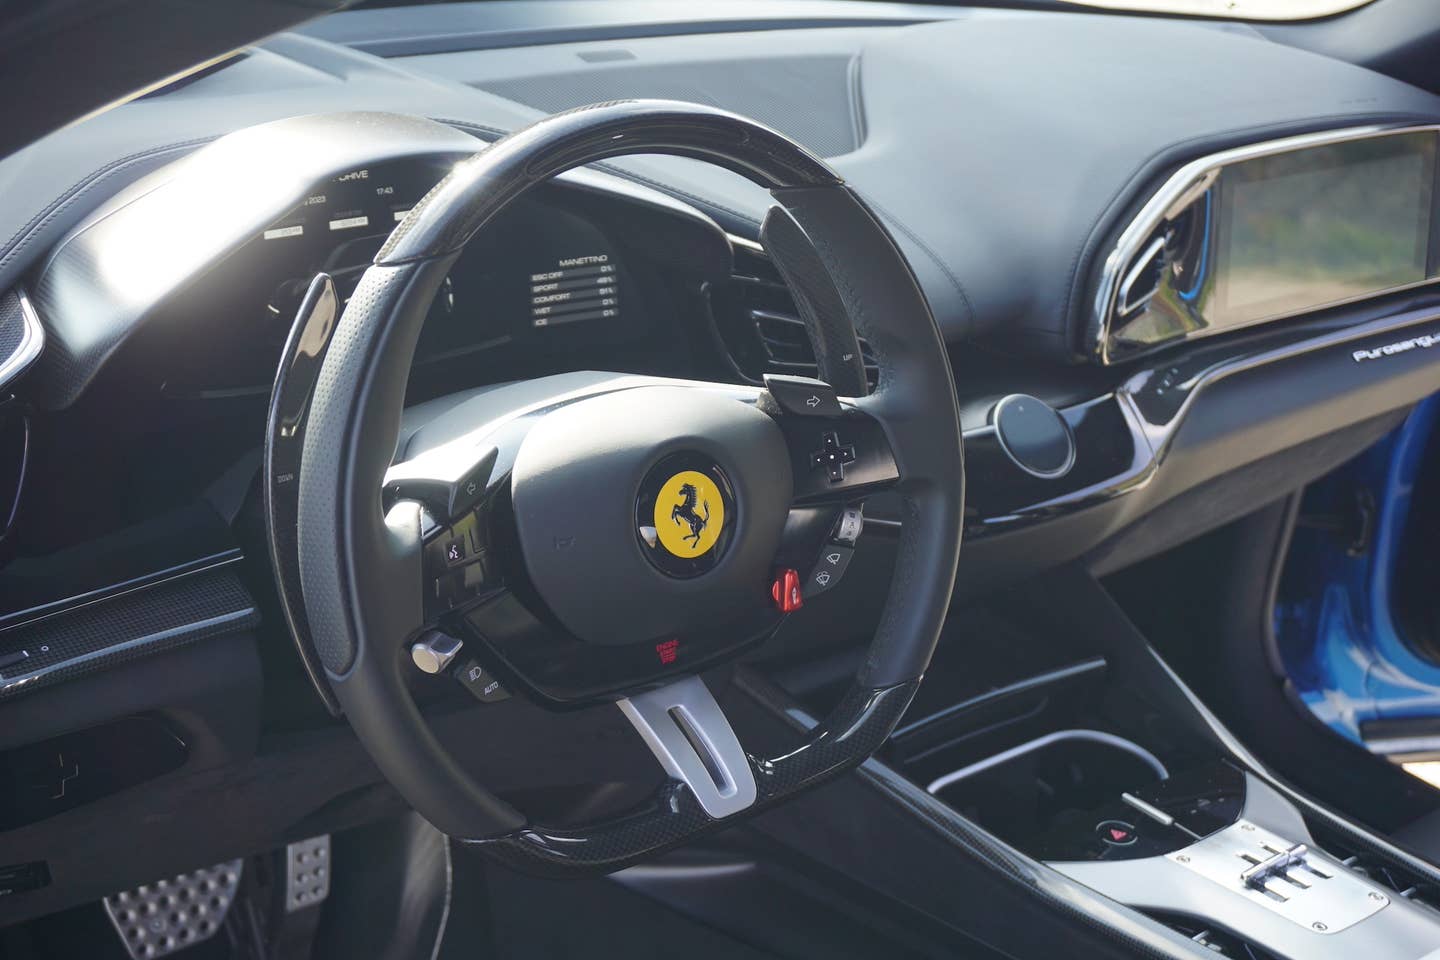 Ferrari Reviews photo